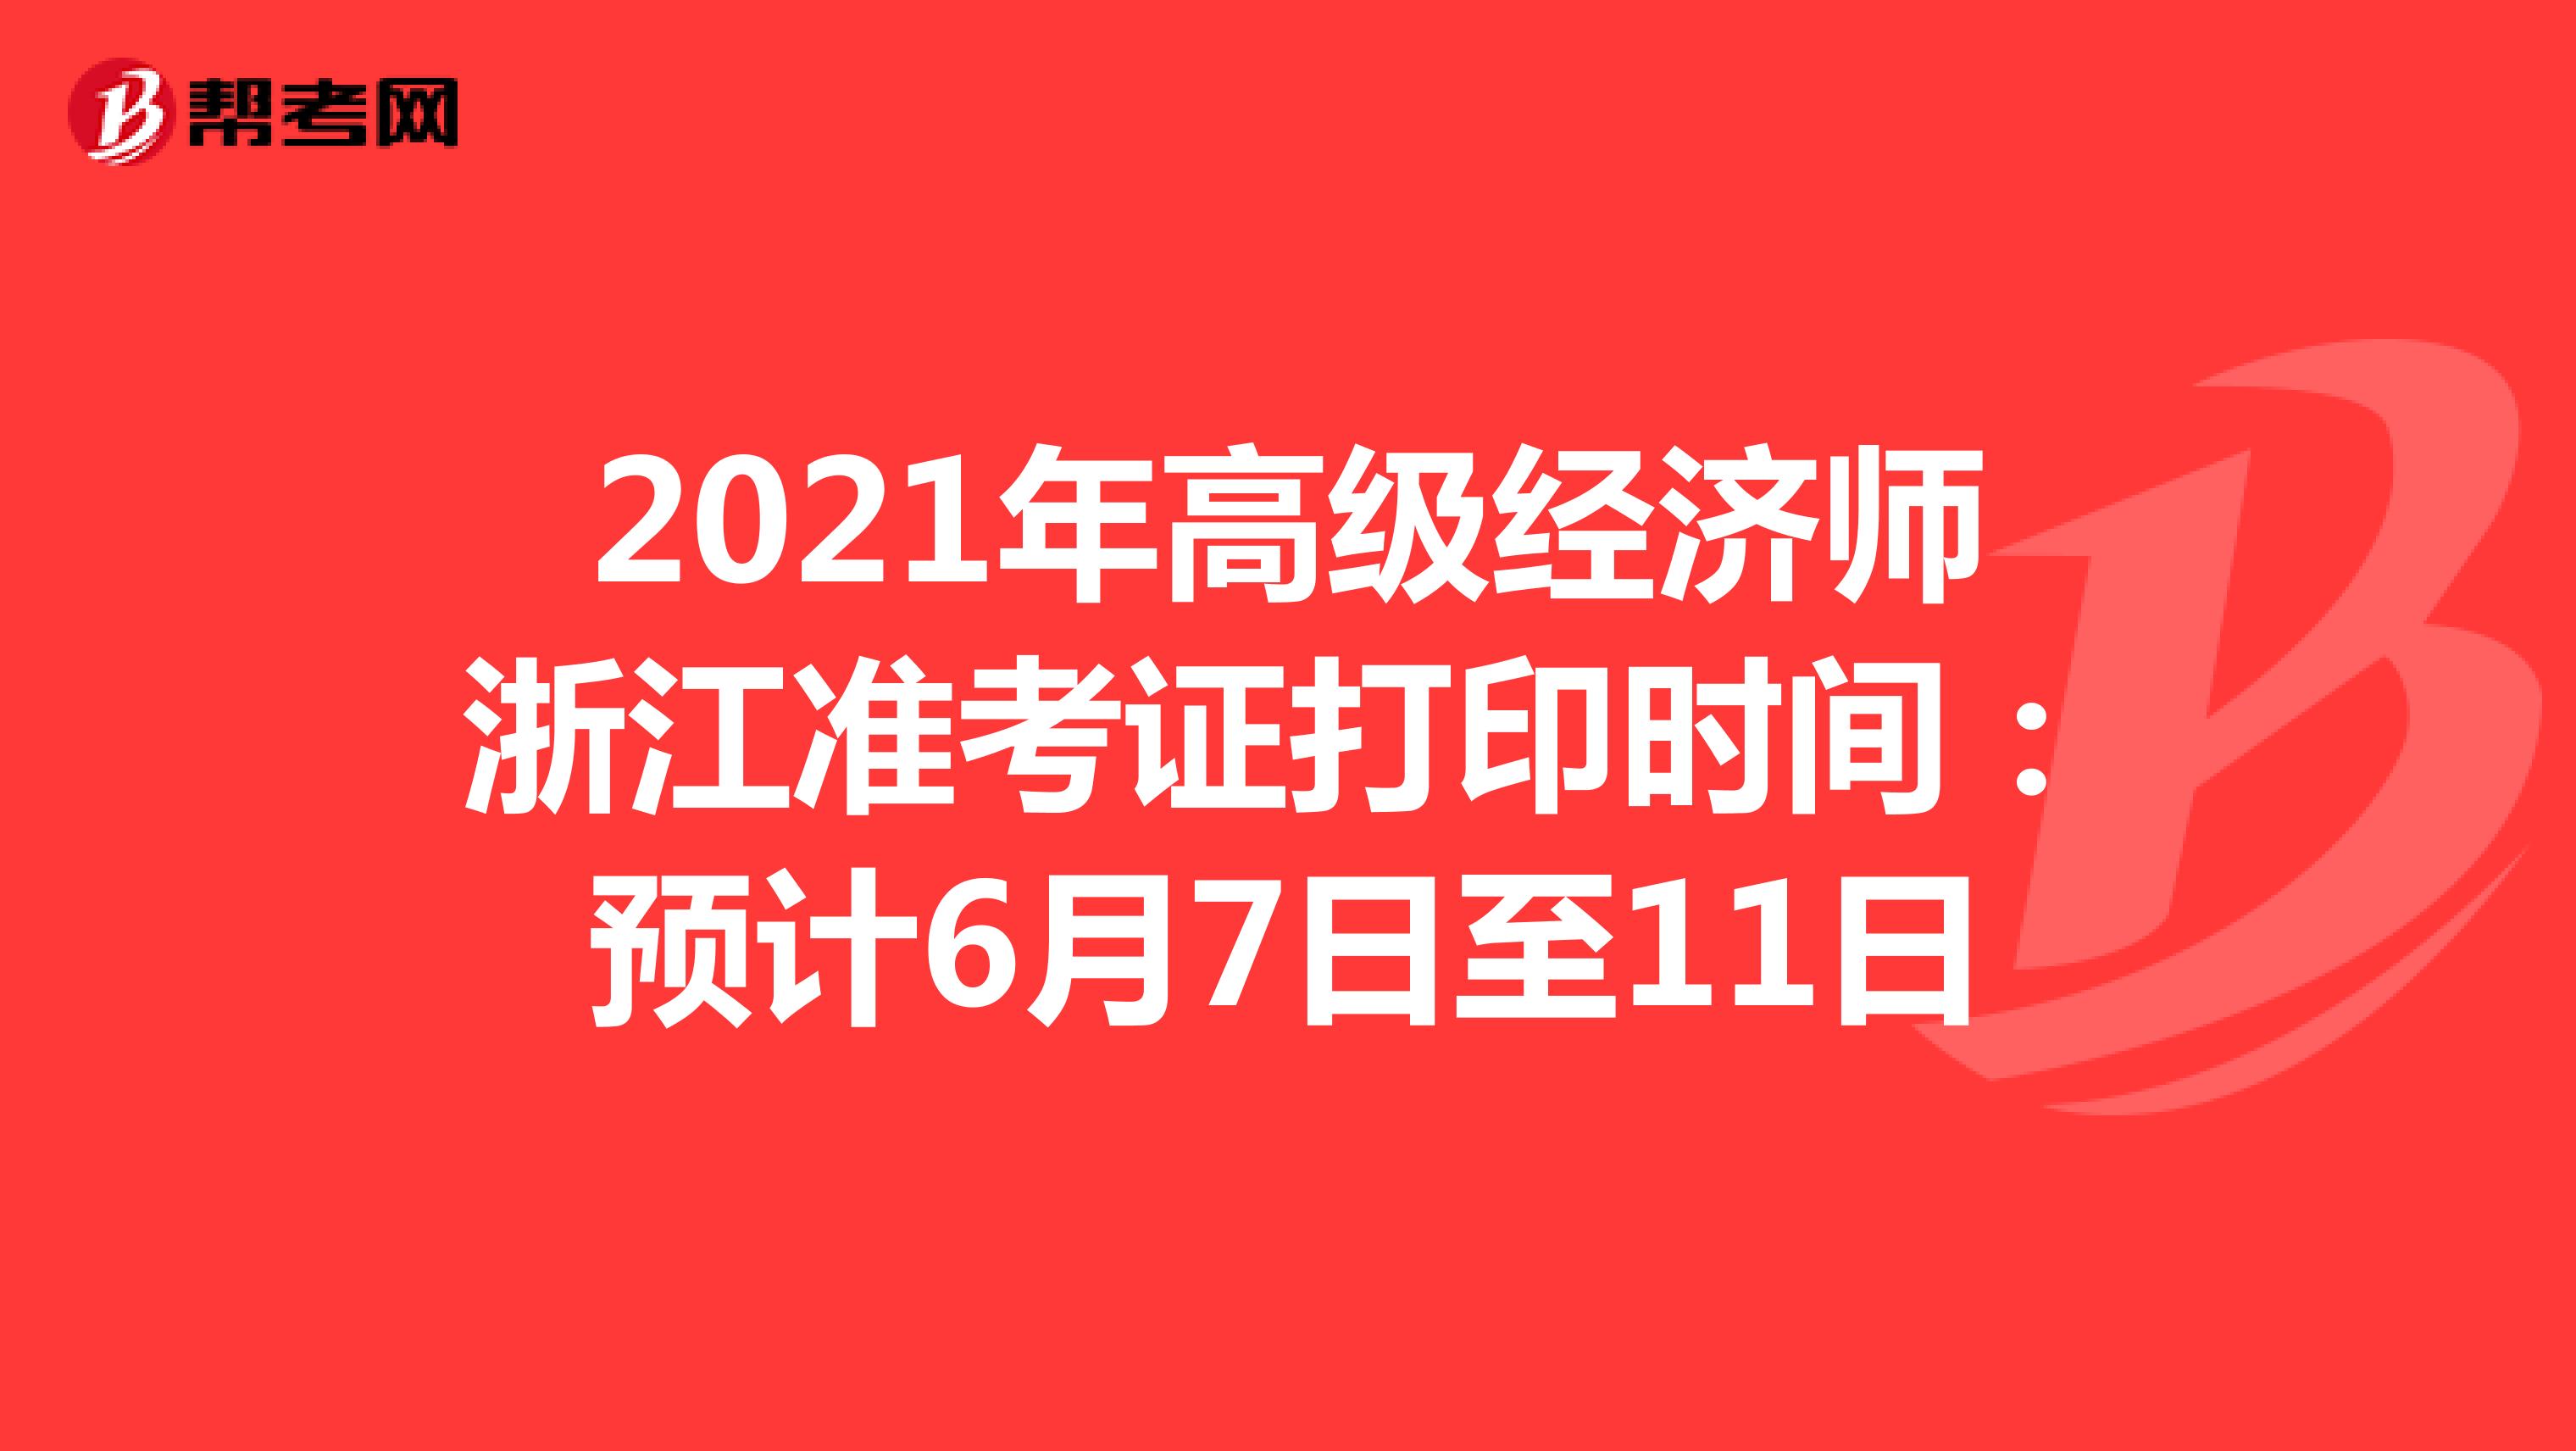 2021年高级经济师浙江准考证打印时间：预计6月7日至11日